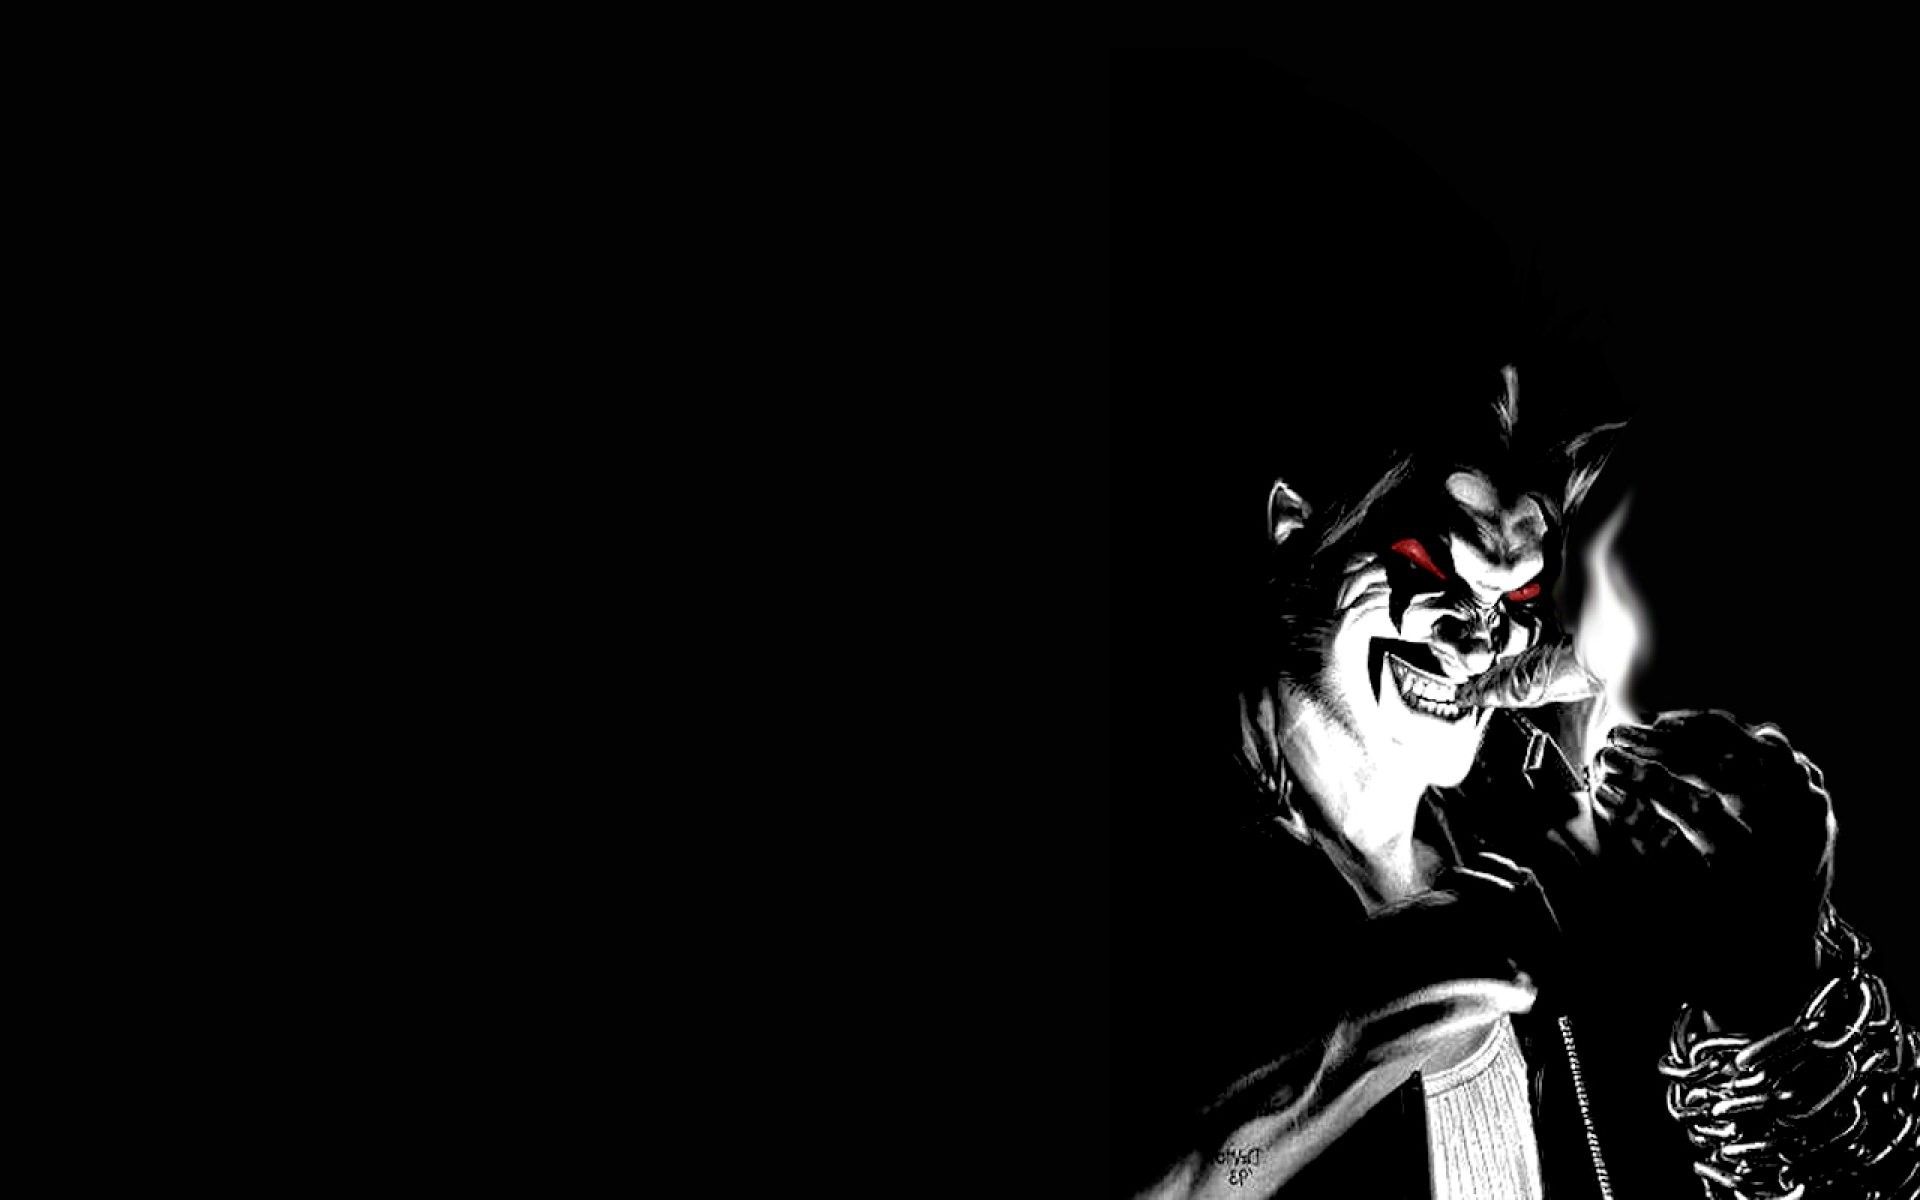 fond d'écran d'horreur 4k,personnage fictif,supervillain,ténèbres,noir et blanc,illustration